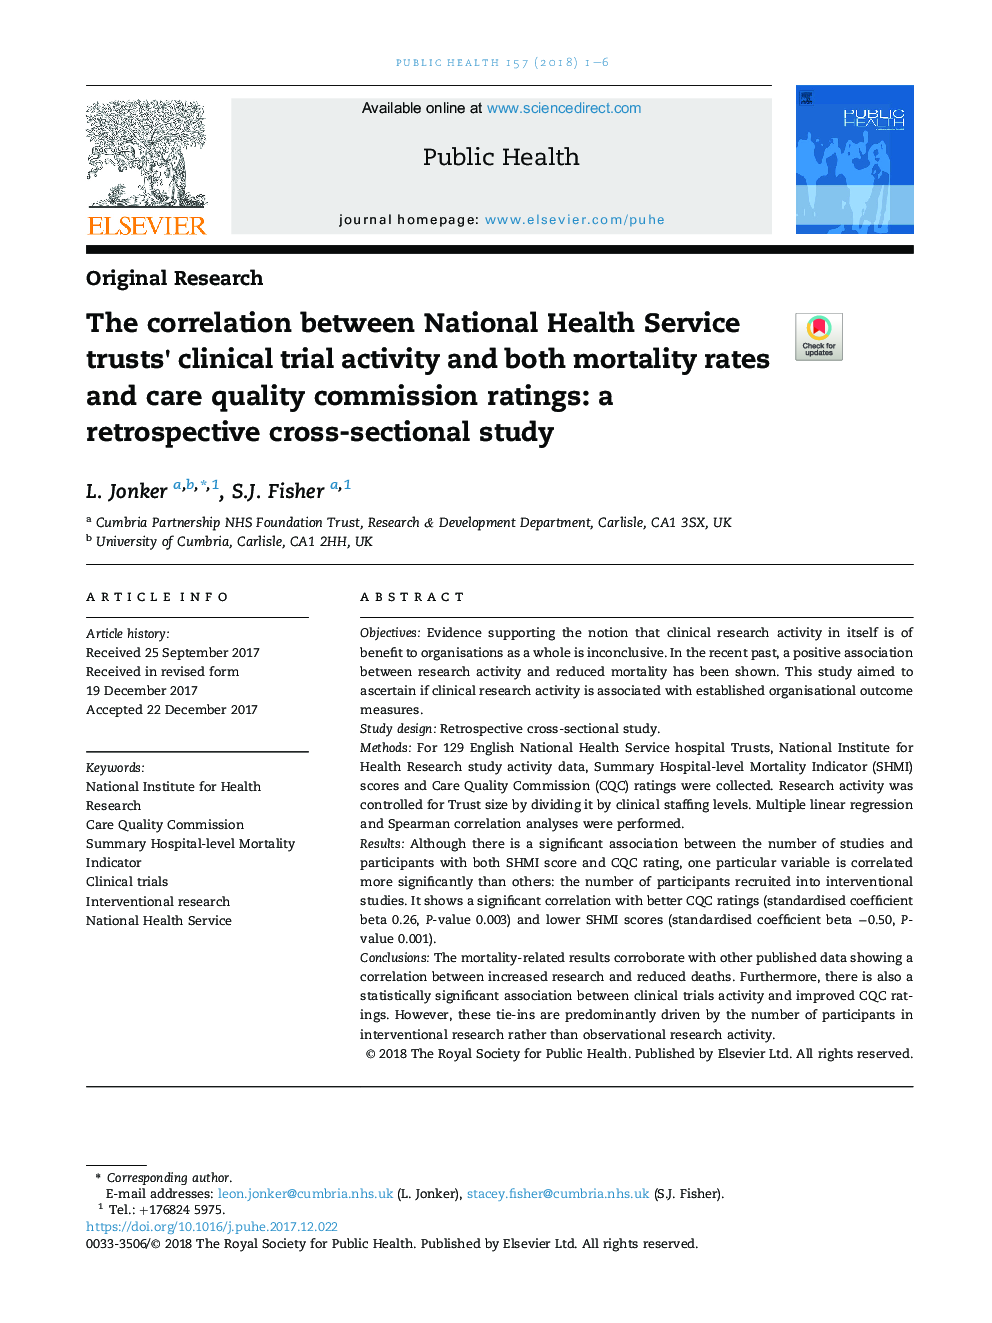 همبستگی بین فعالیت های آزمایشگاهی بیمارستان ملی خدمات بهداشتی و میزان مرگ و میر و کیفیت خدمات مراقبت از کیفیت: یک مطالعه گذشته نگر مقطعی 